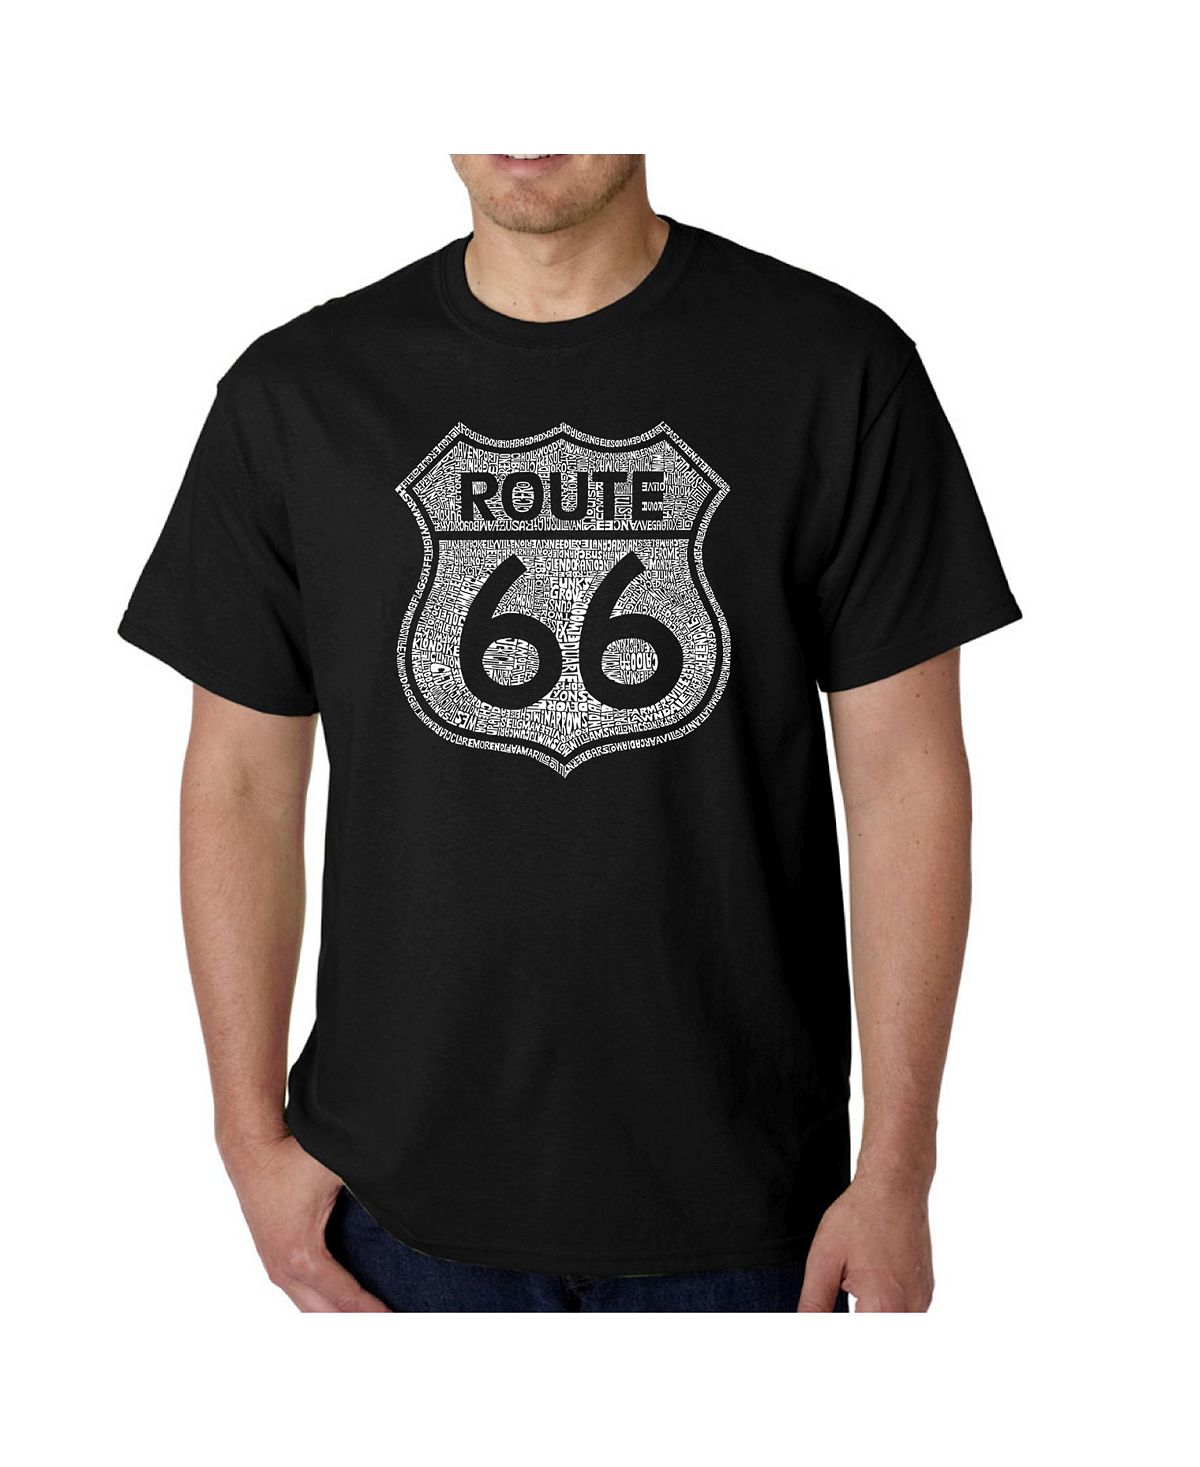 Мужская футболка с рисунком Word Art — Route 66 LA Pop Art это останется навсегда